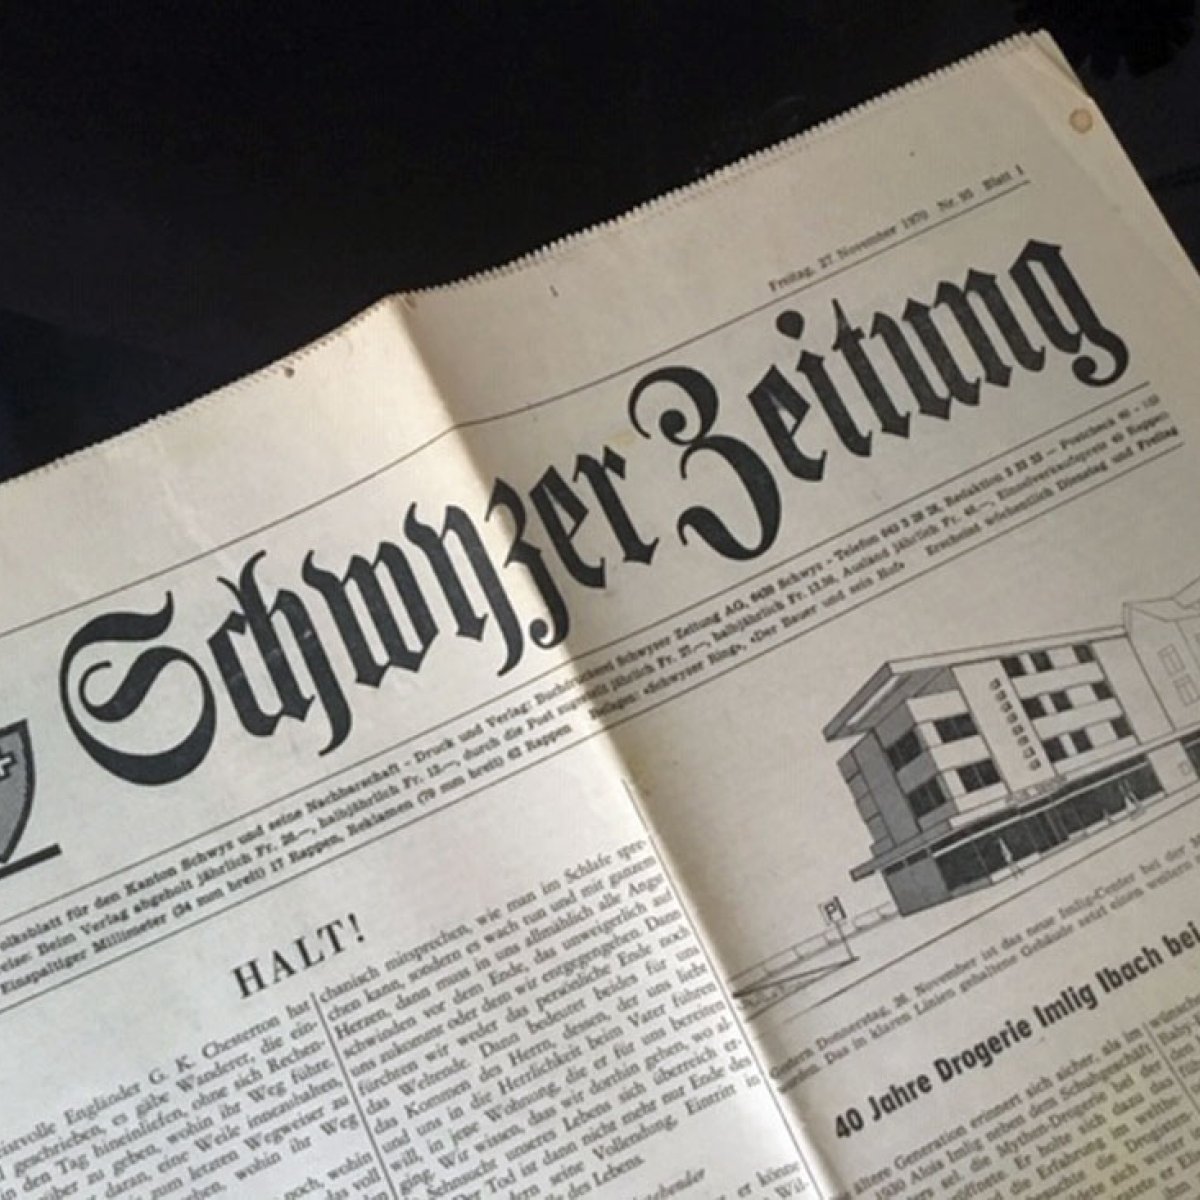 Drogerie-Imlig-Ibach-Zeitung-Neueroeffnung-1970.jpg